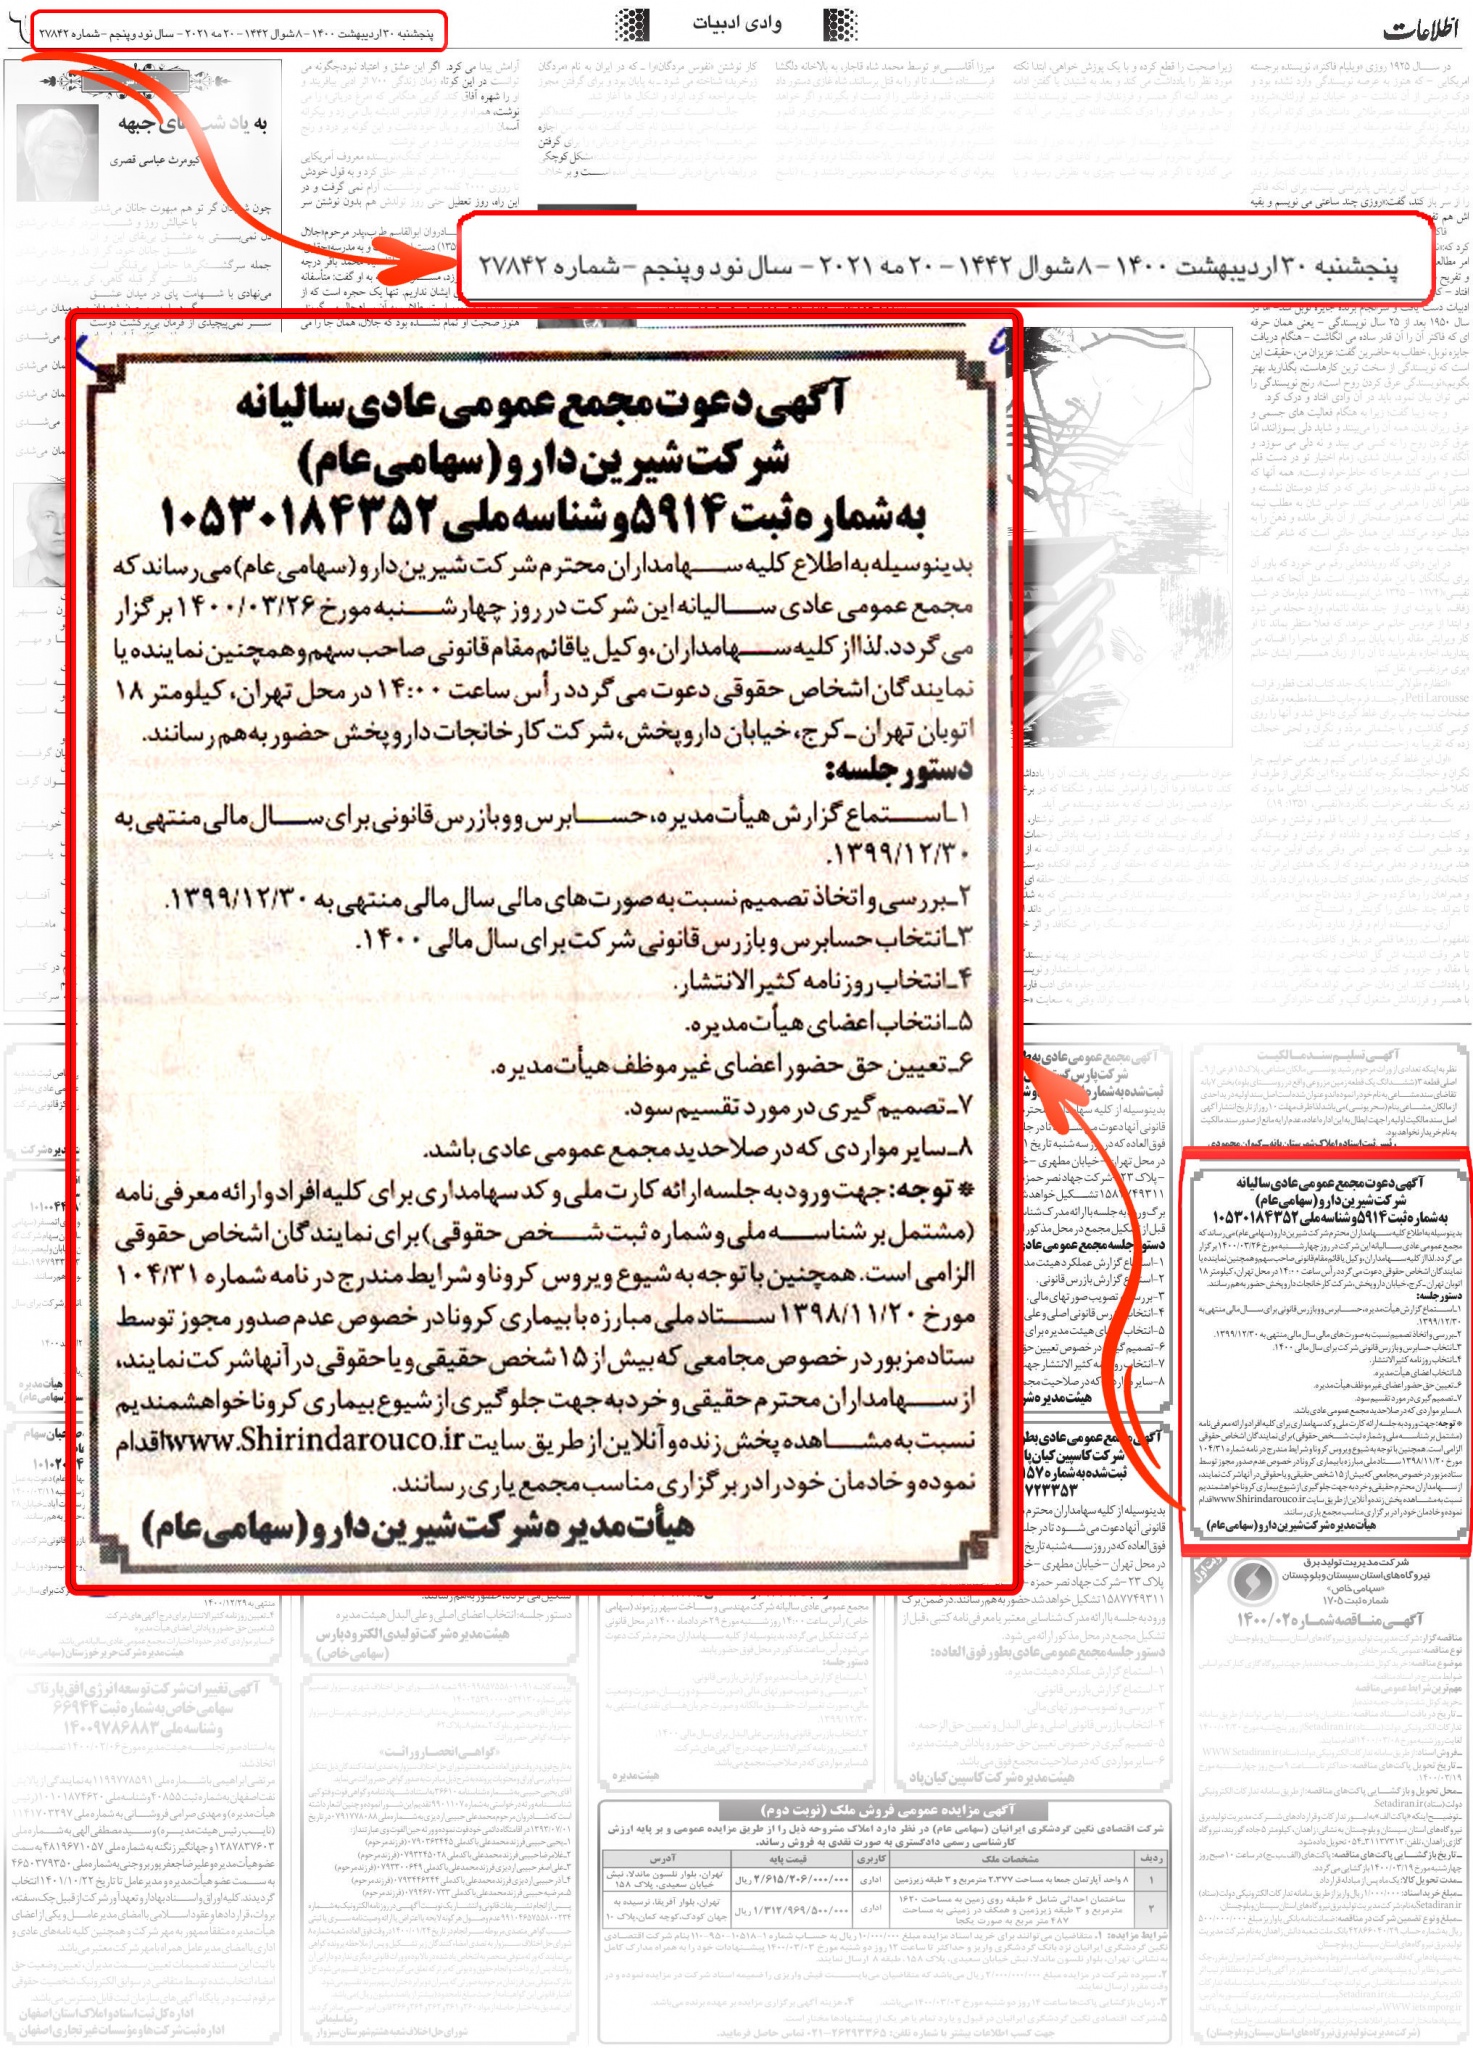 آگهی دعوت مجمع عمومی عادی سالیانه شرکت شیرین دارو (سهامی عام) 26 خرداد 1400